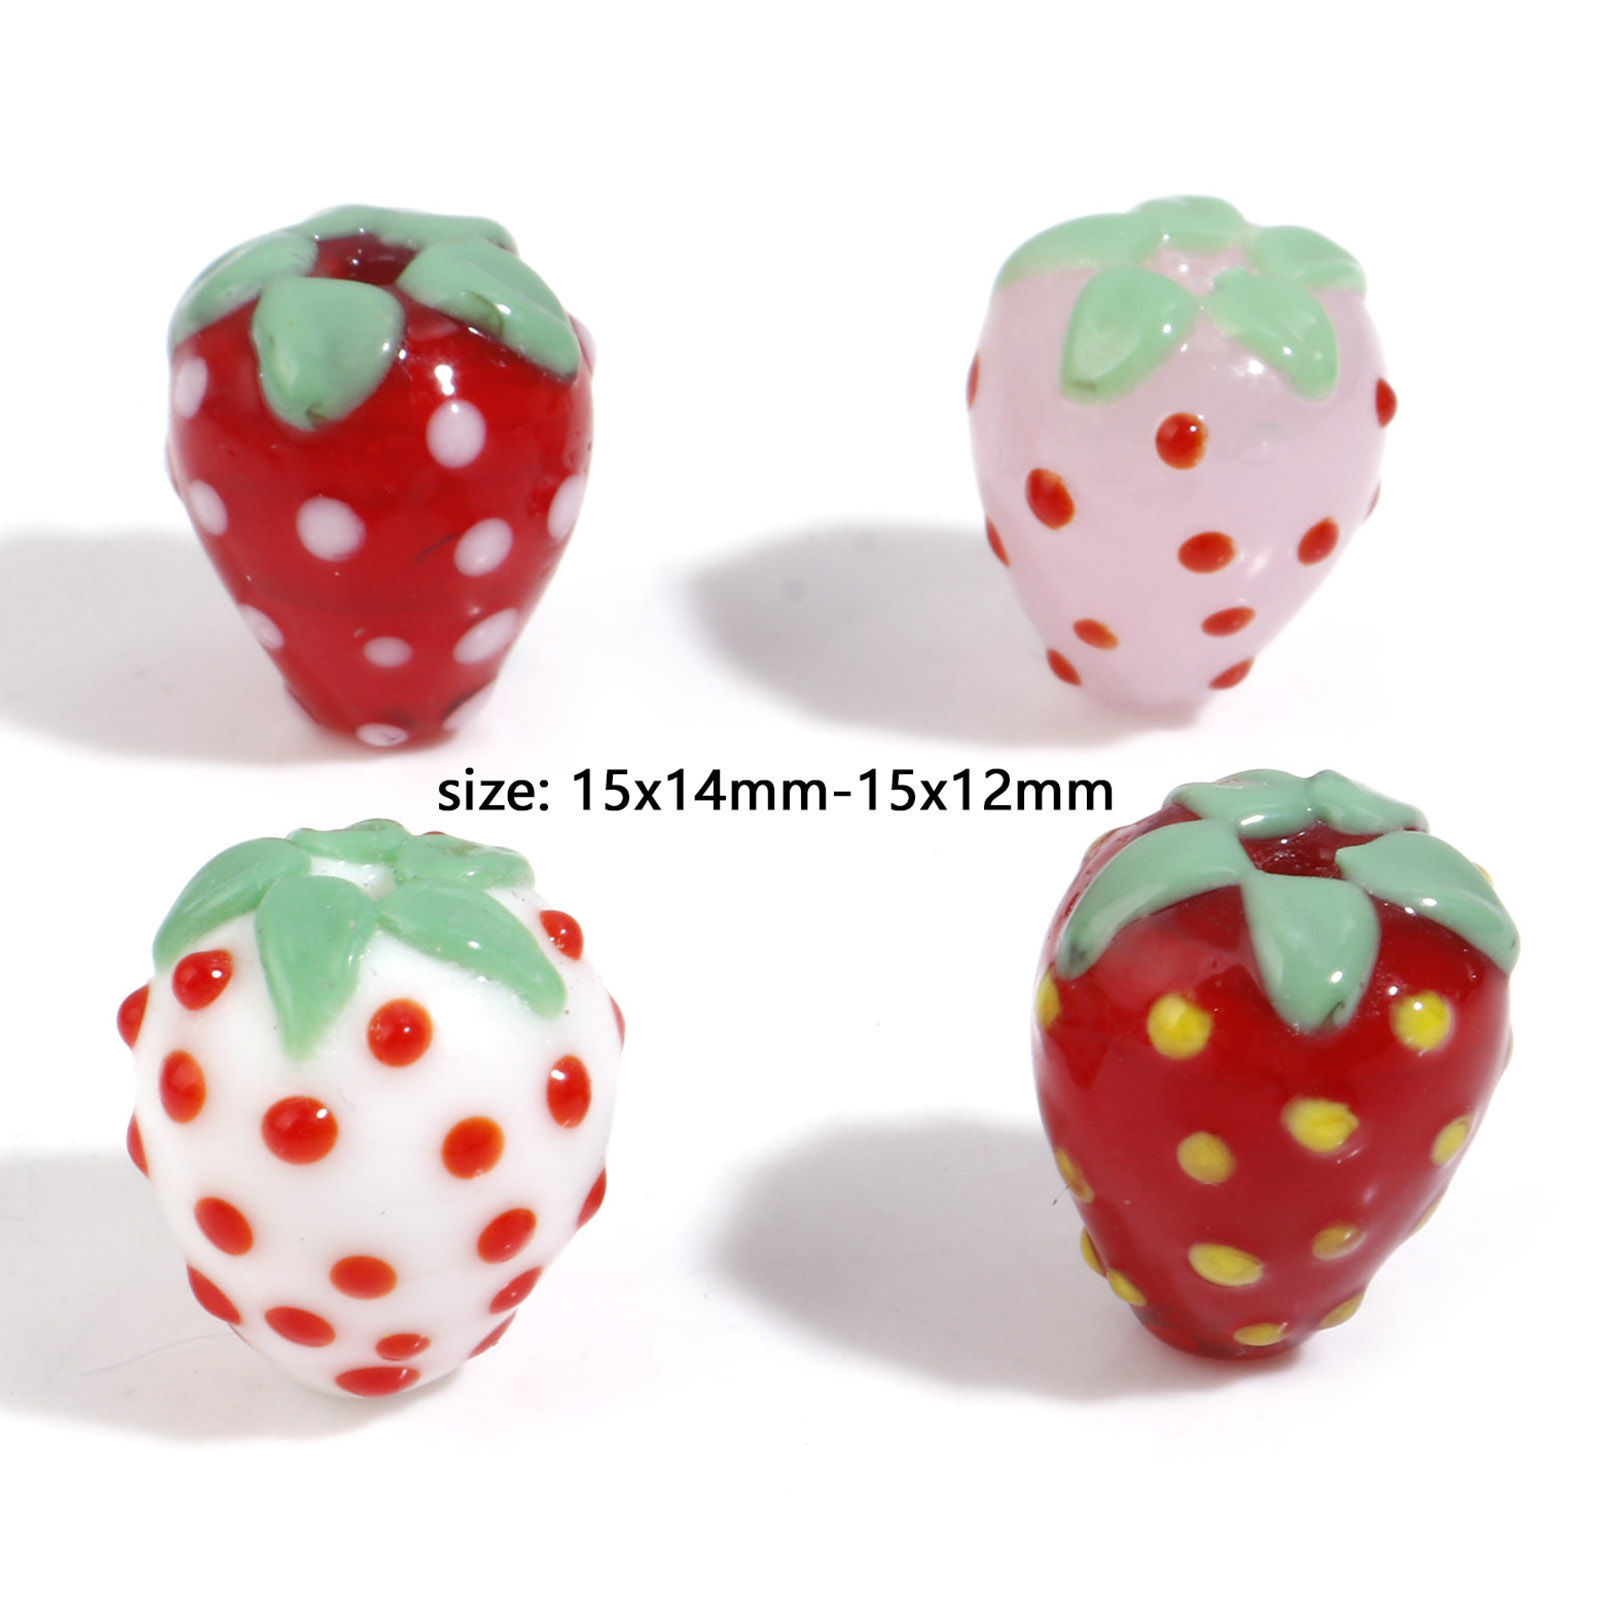 Bild von Muranoglas 3D Perlen Erdbeeren Bunt 2 Stück